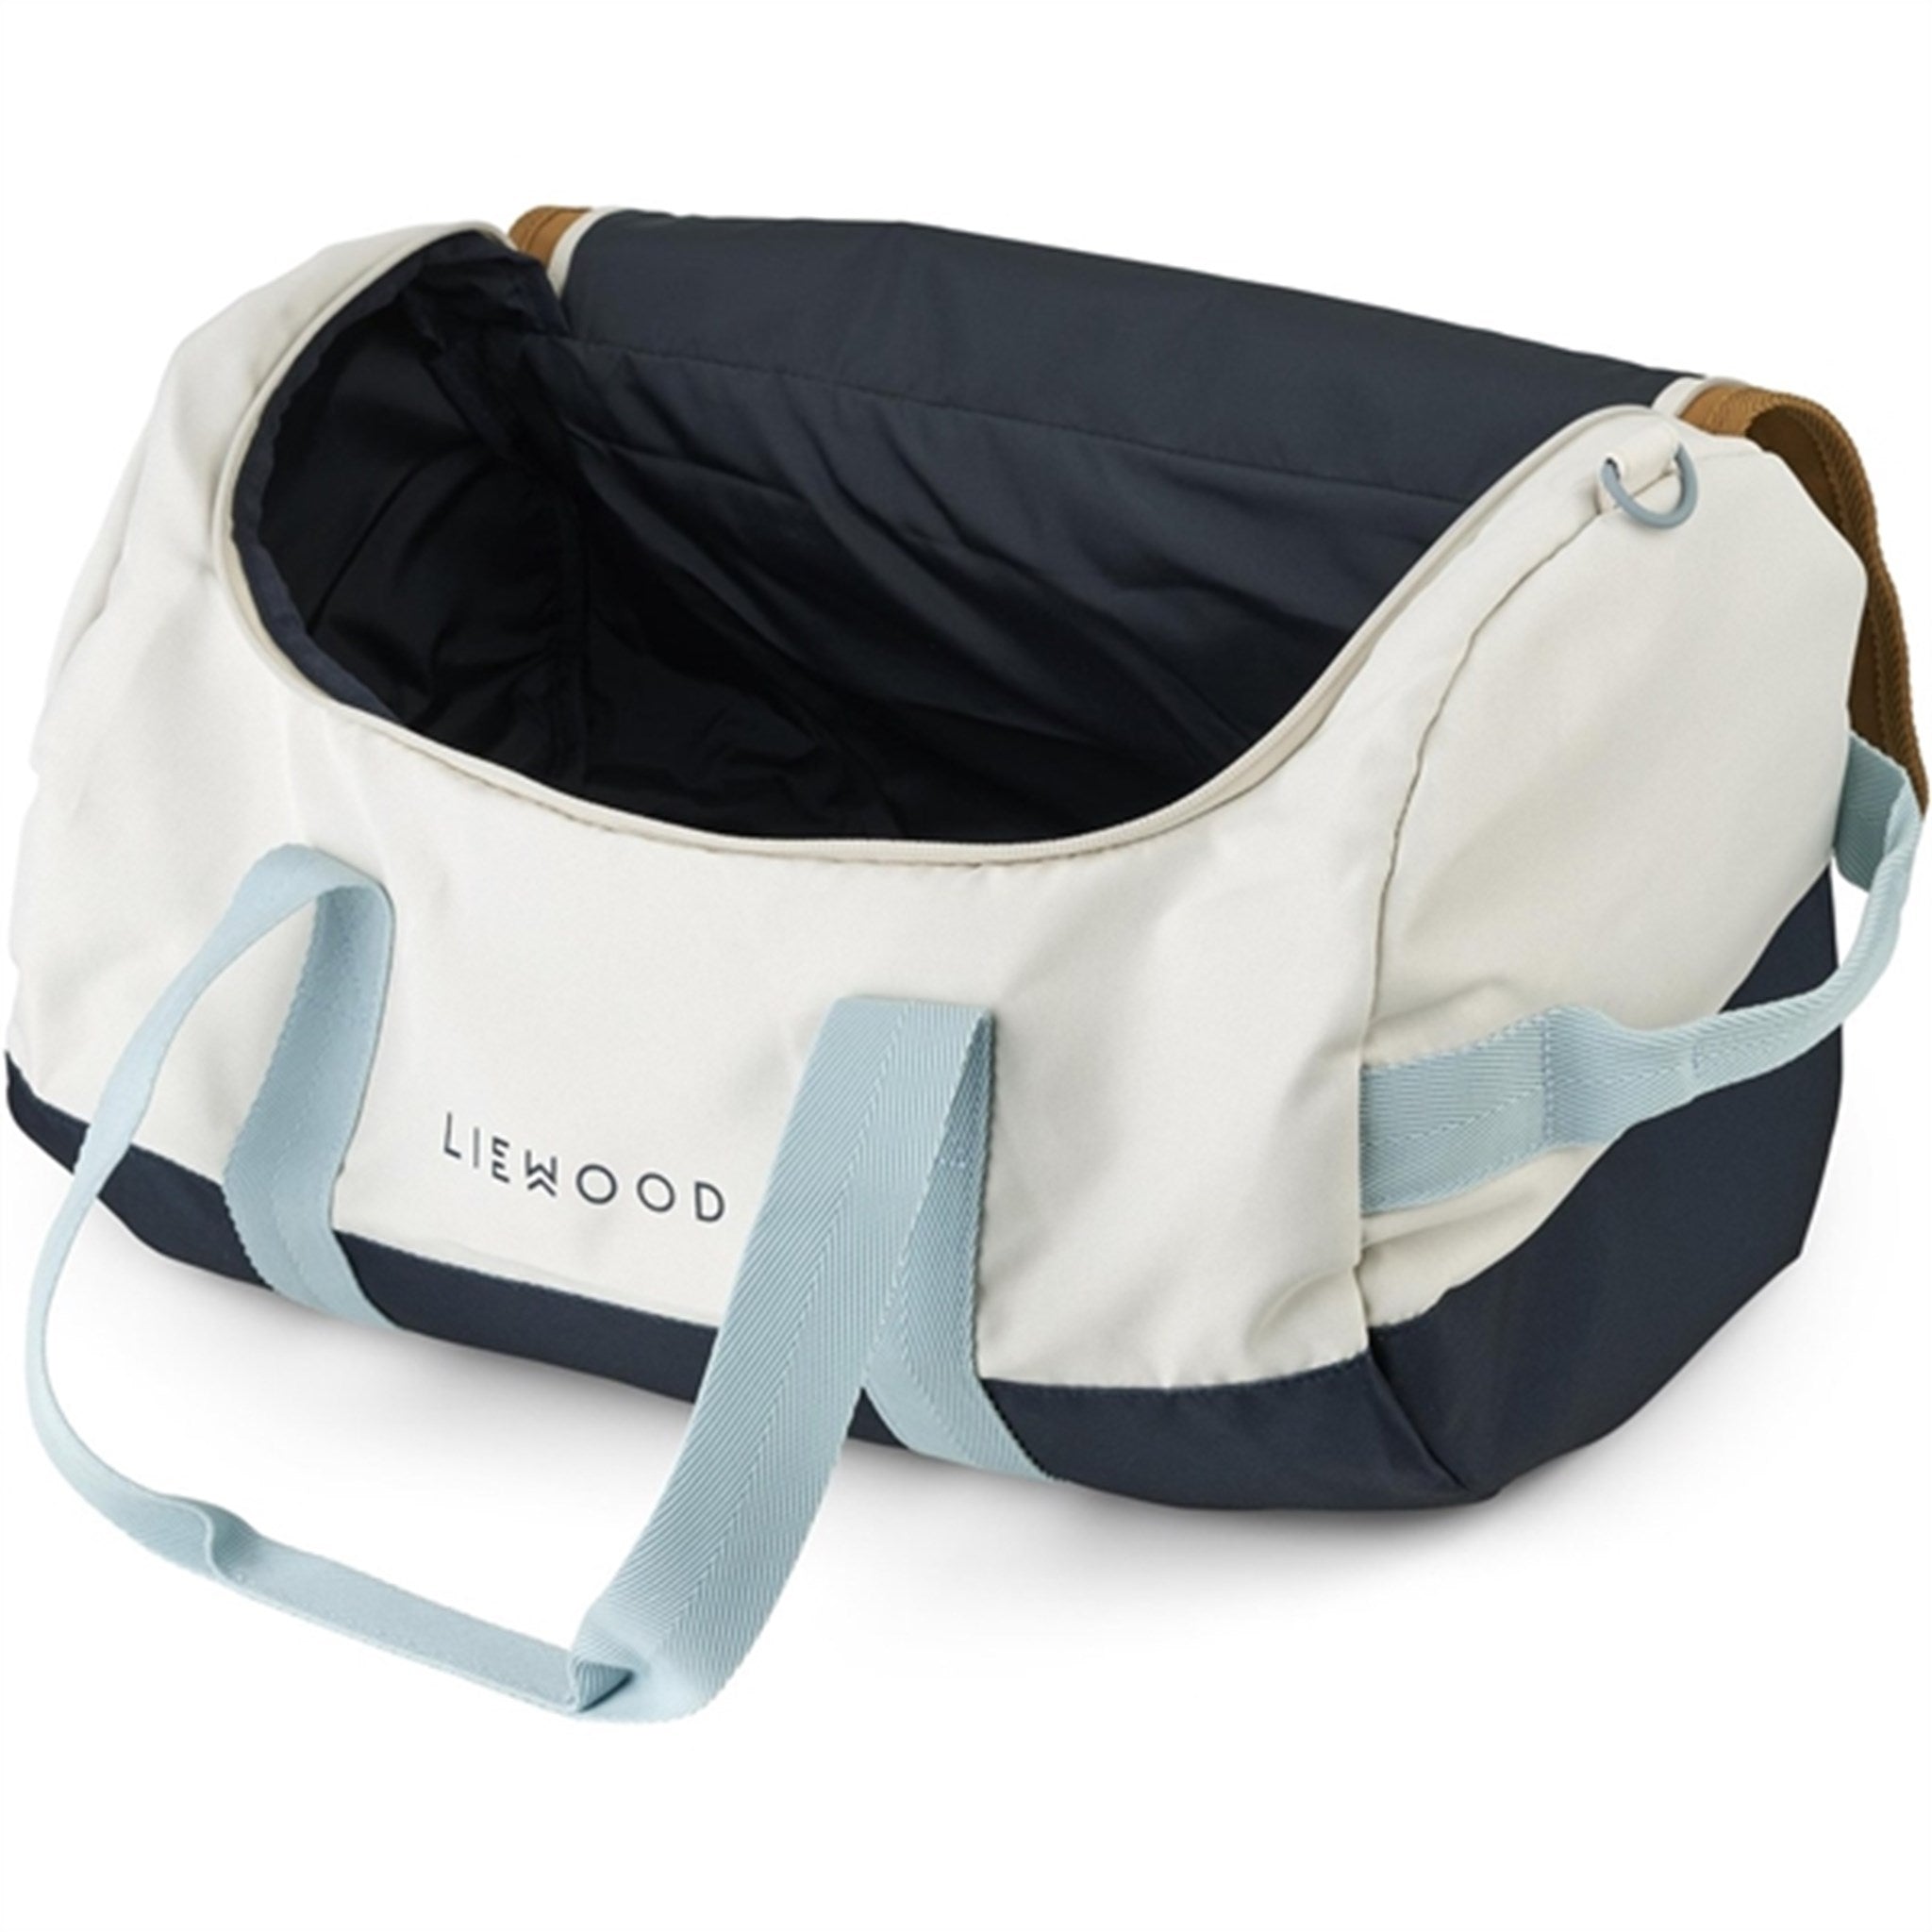 Liewood Alyssa Travel Bag Midnight Navy/Sea Blue 3